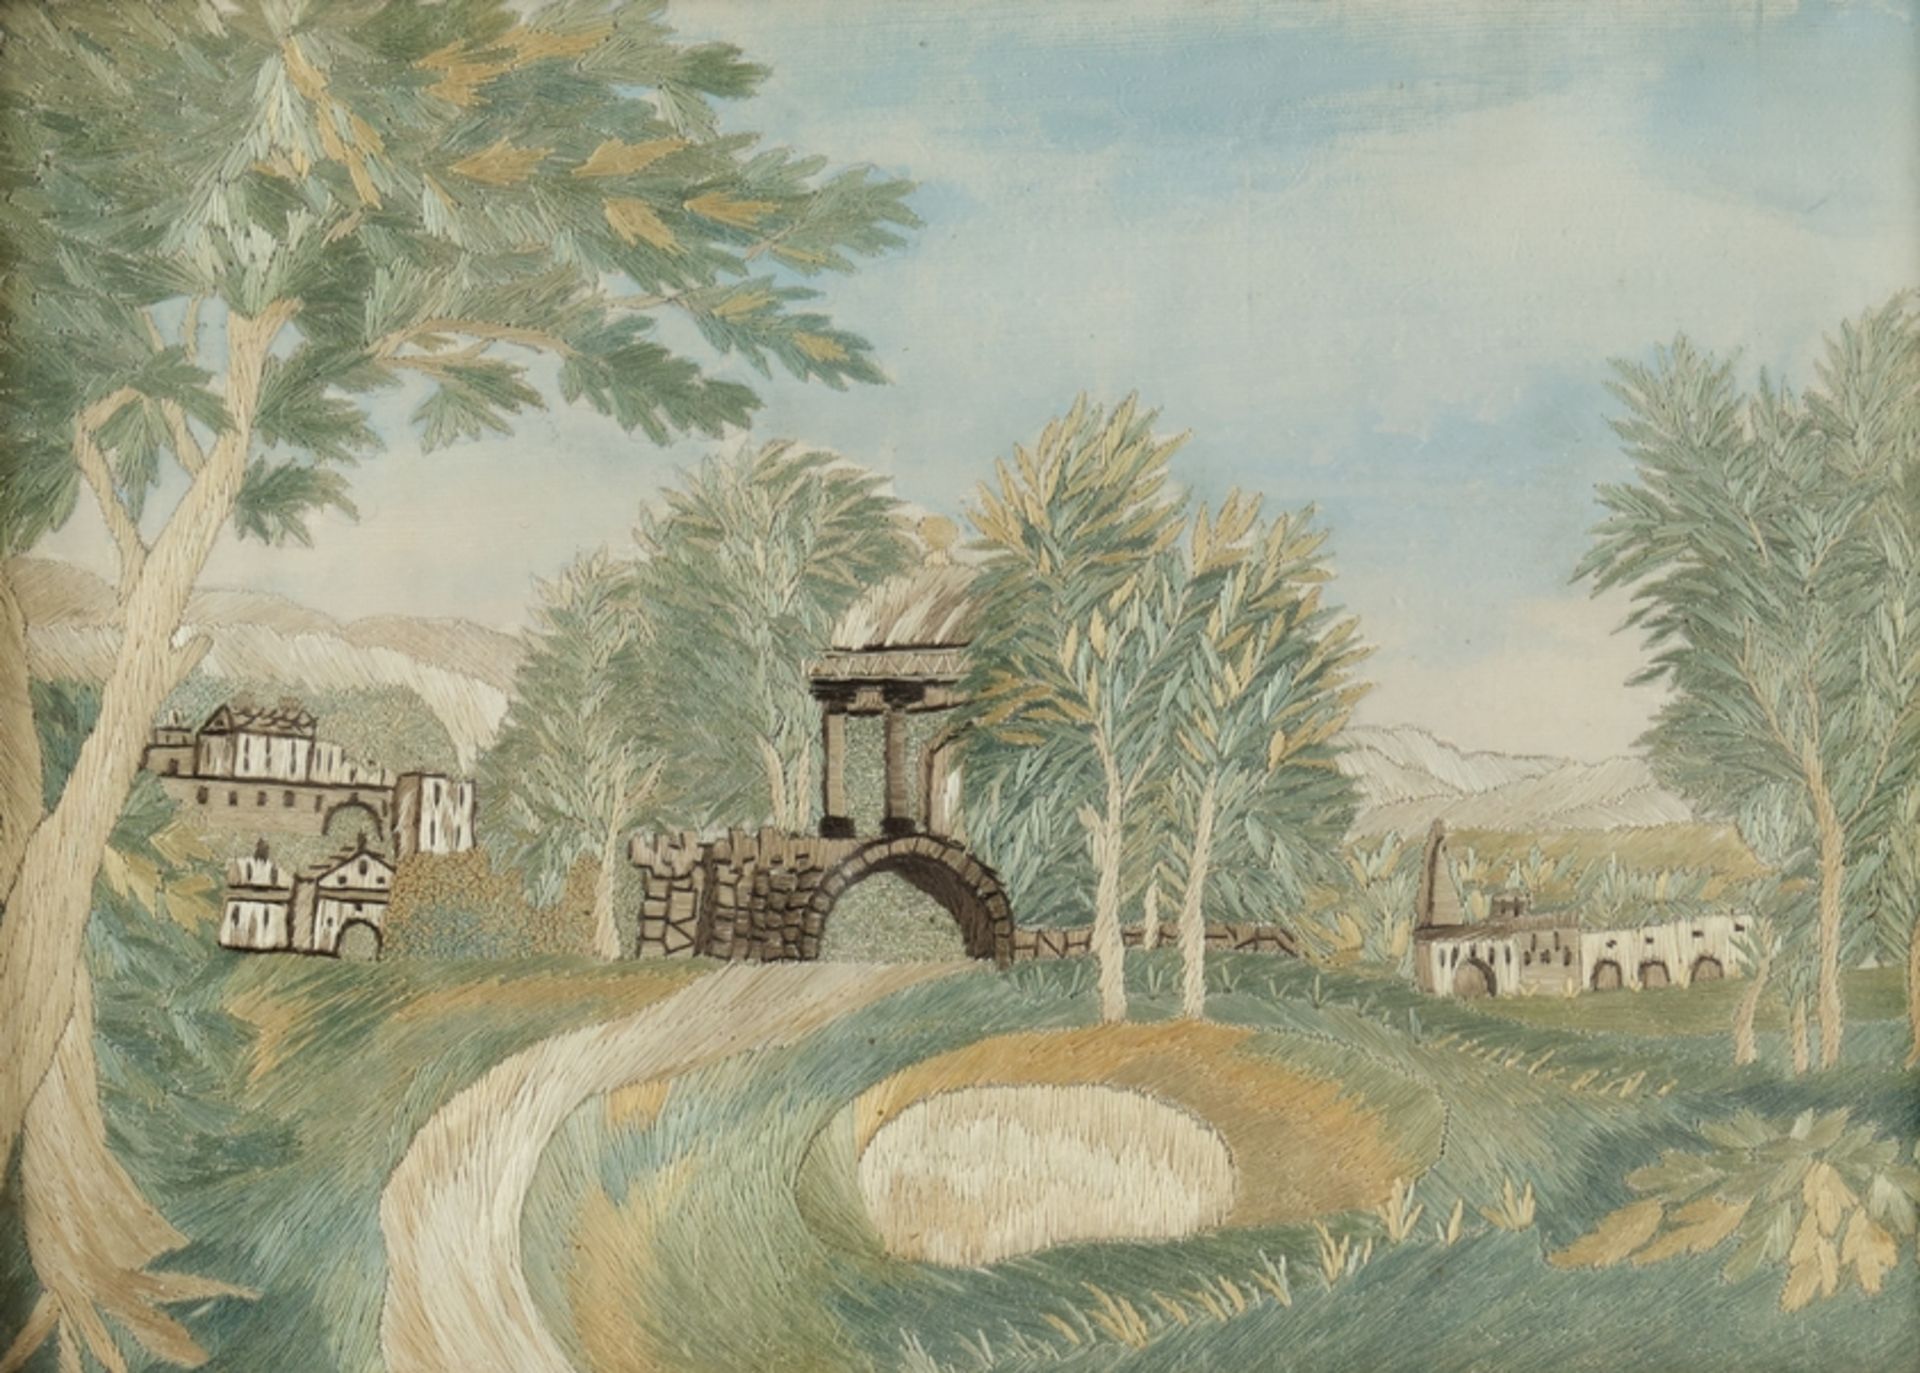 Stickbild, "Landschaft mit Pavillon", Stickerei auf Seide, 17 x 23.4 cm, unter Glas gerahmt